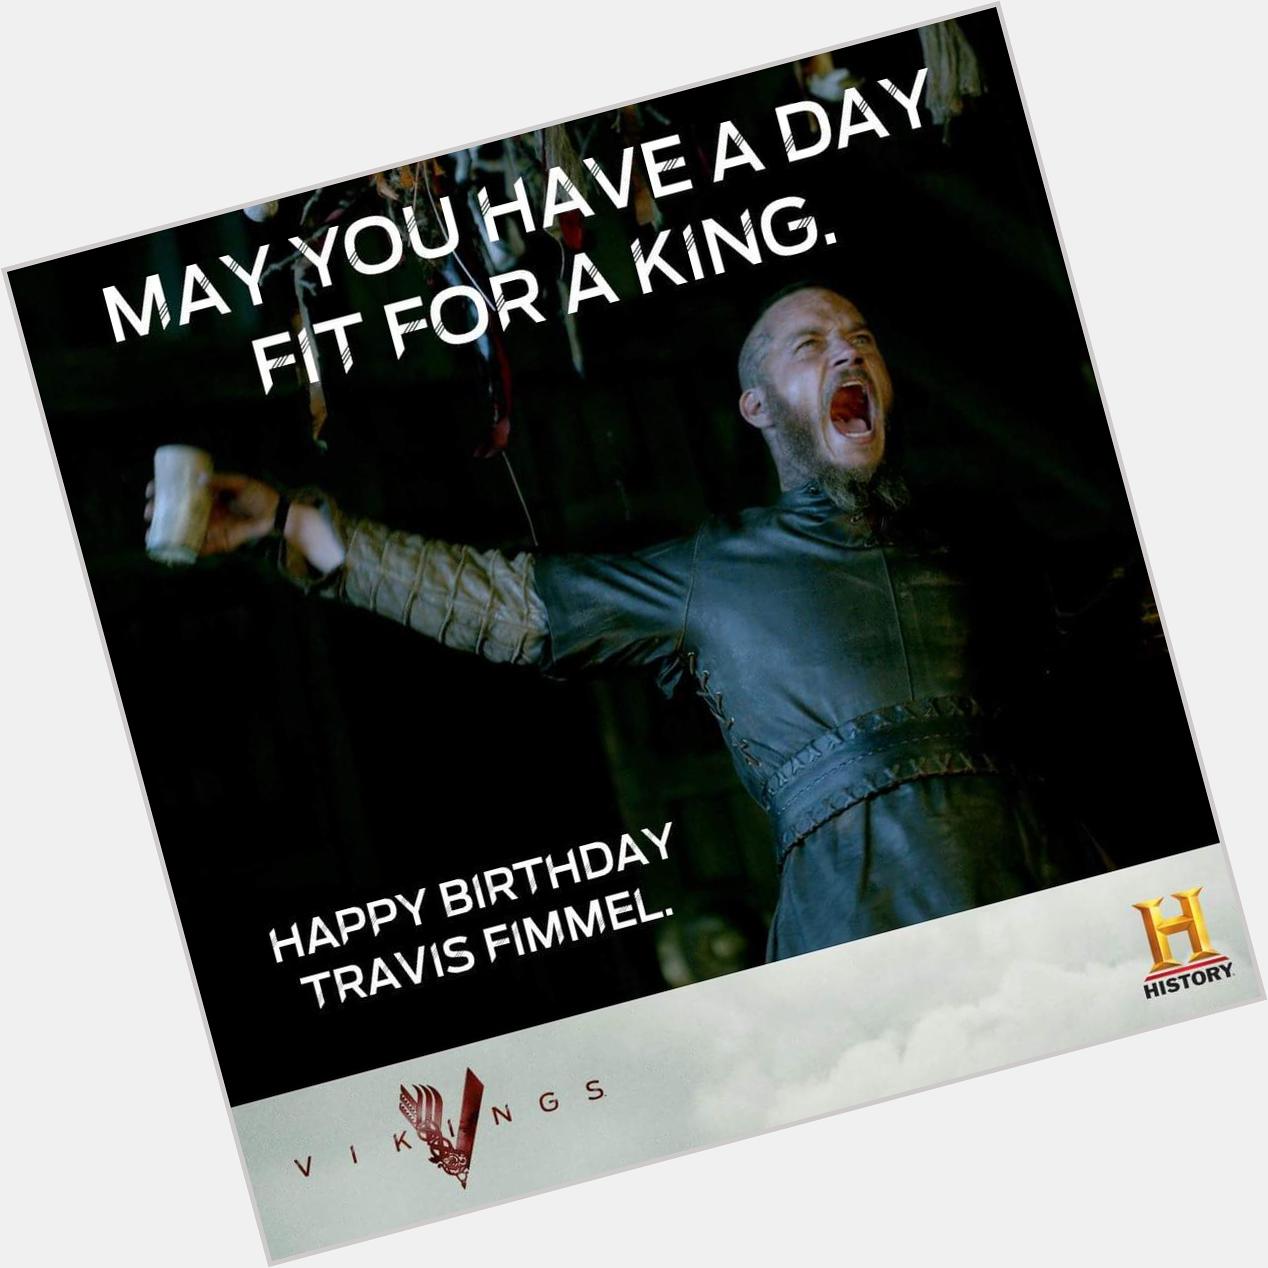 Happy  birthday Travis Fimmel!  